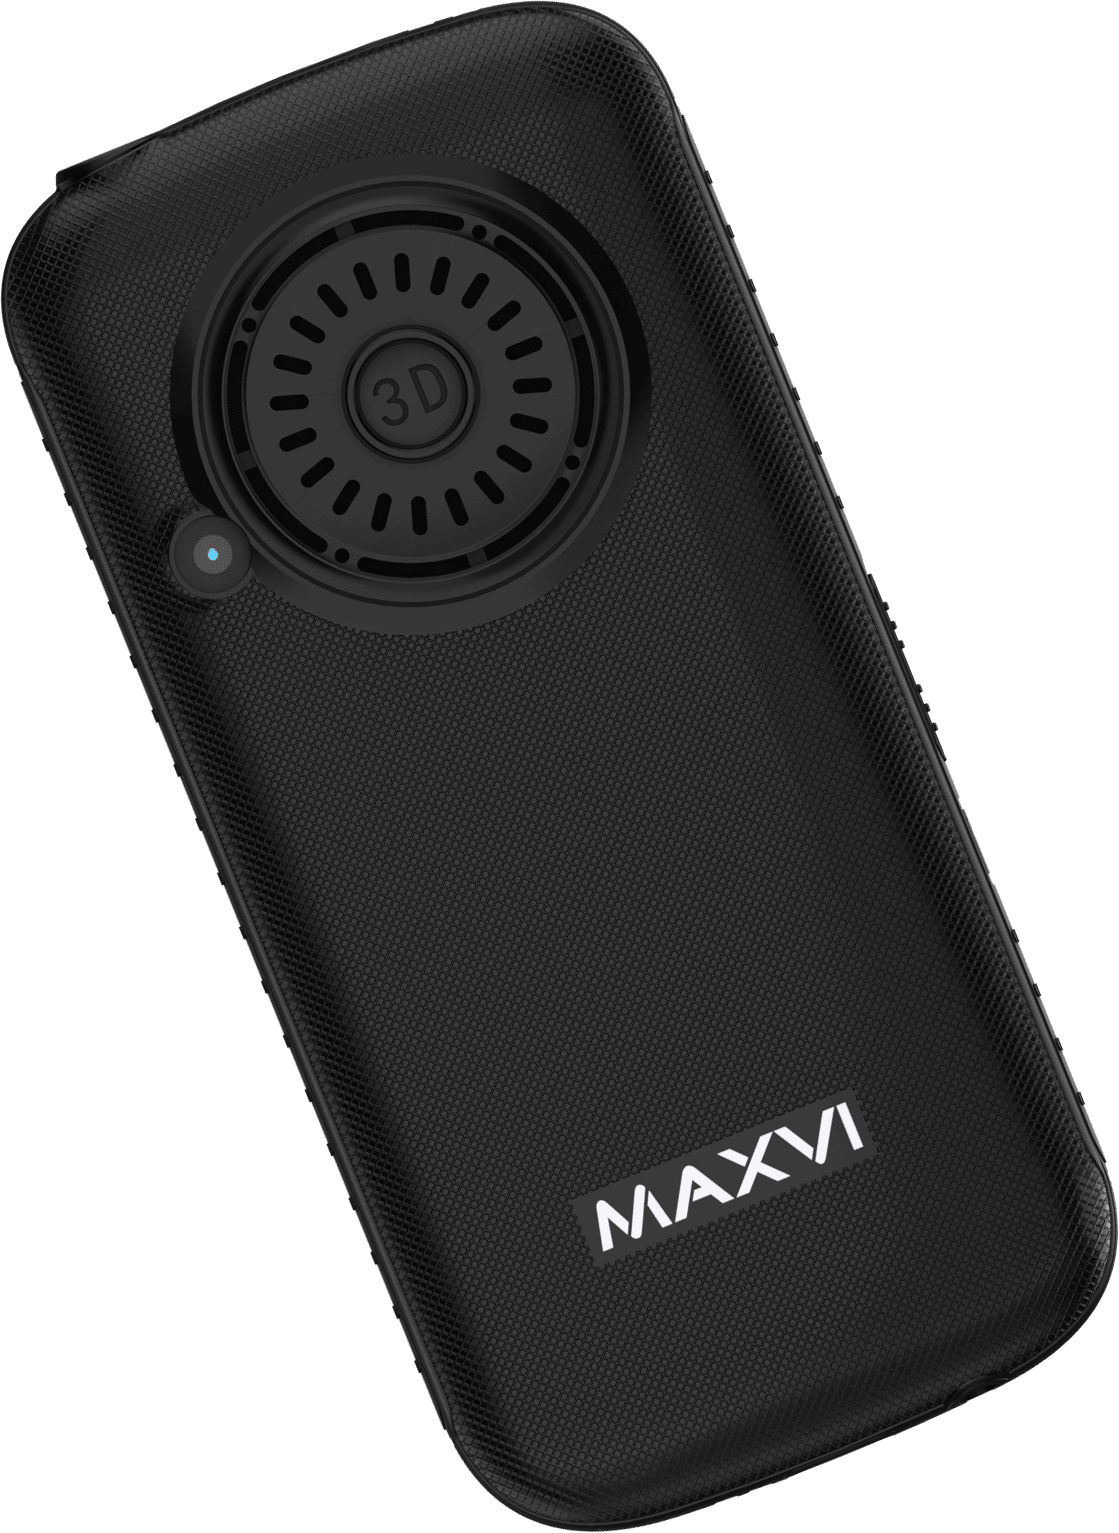 Мобильный телефон Maxvi B5ds